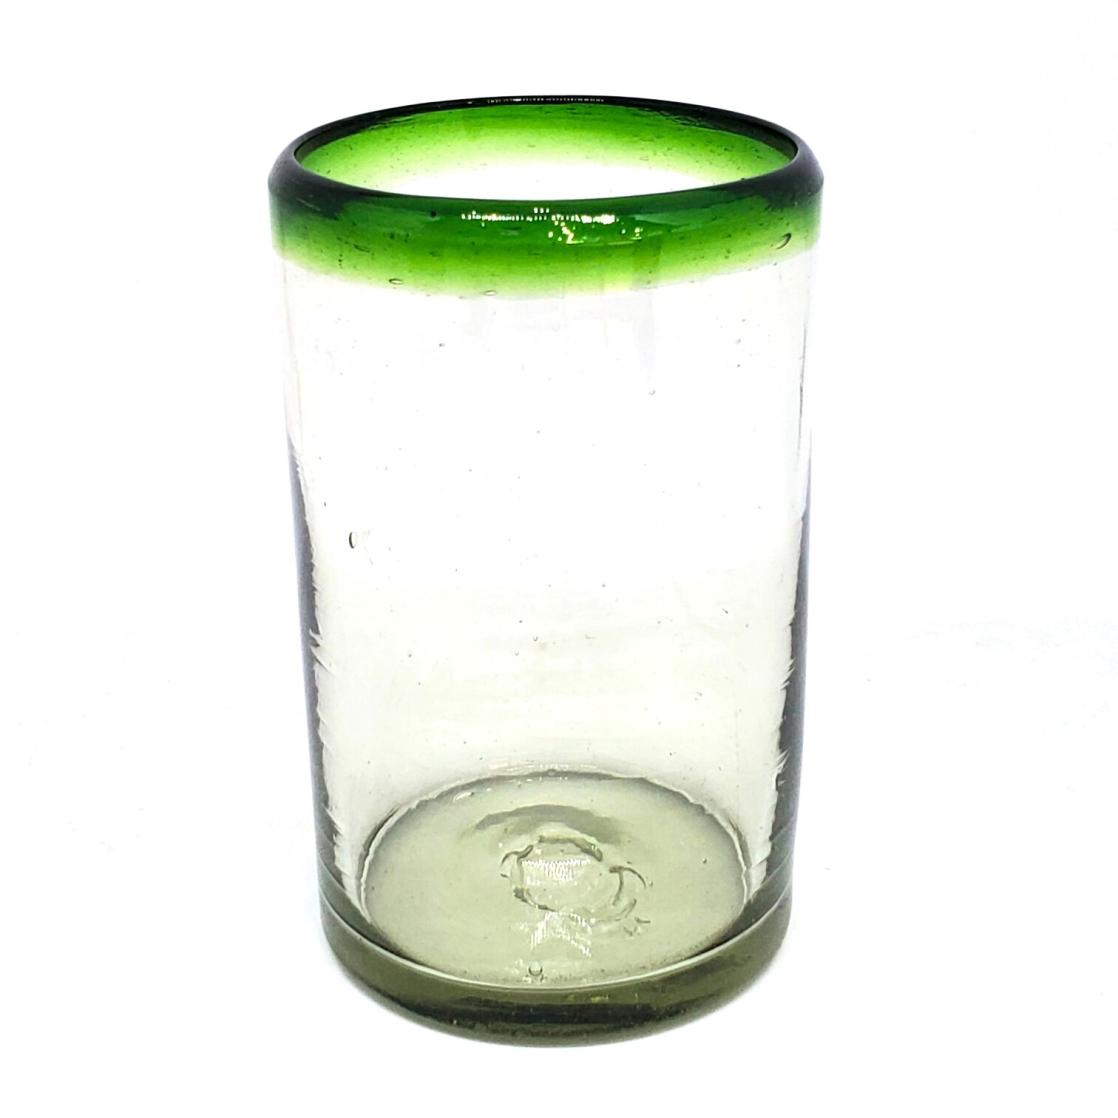 Ofertas / Juego de 6 vasos grandes con borde verde esmeralda, 14 oz, Vidrio Reciclado, Libre de Plomo y Toxinas / stos artesanales vasos le darn un toque clsico a su bebida favorita.